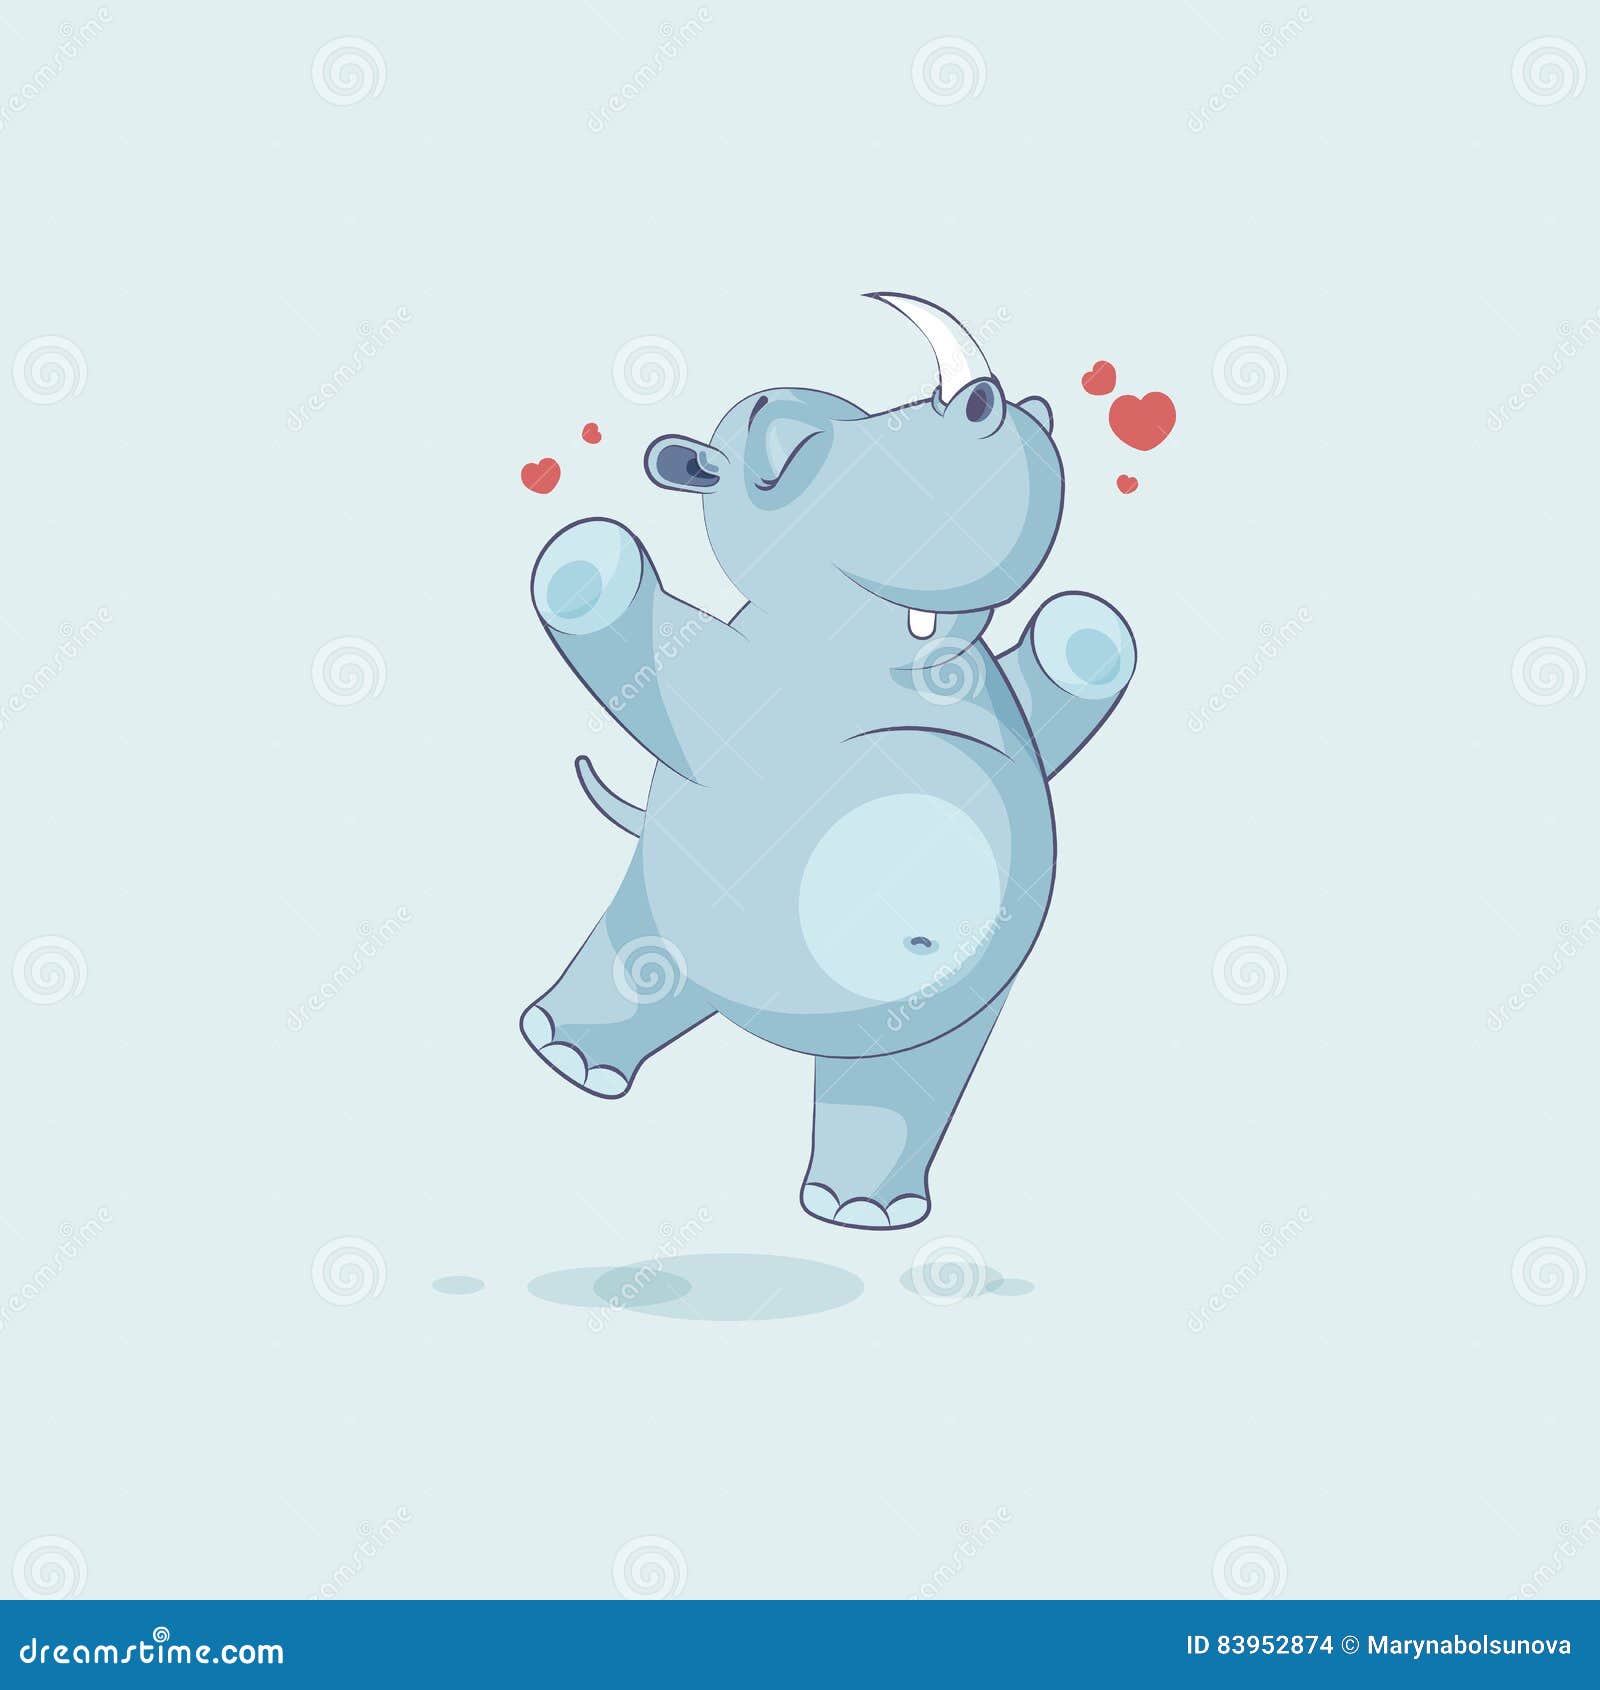 Illustration Emoji Character Cartoon Rhinoceros Jumping for Joy, Happy  Sticker Emoticon Stock Vector - Illustration of funny, mammal: 83952874